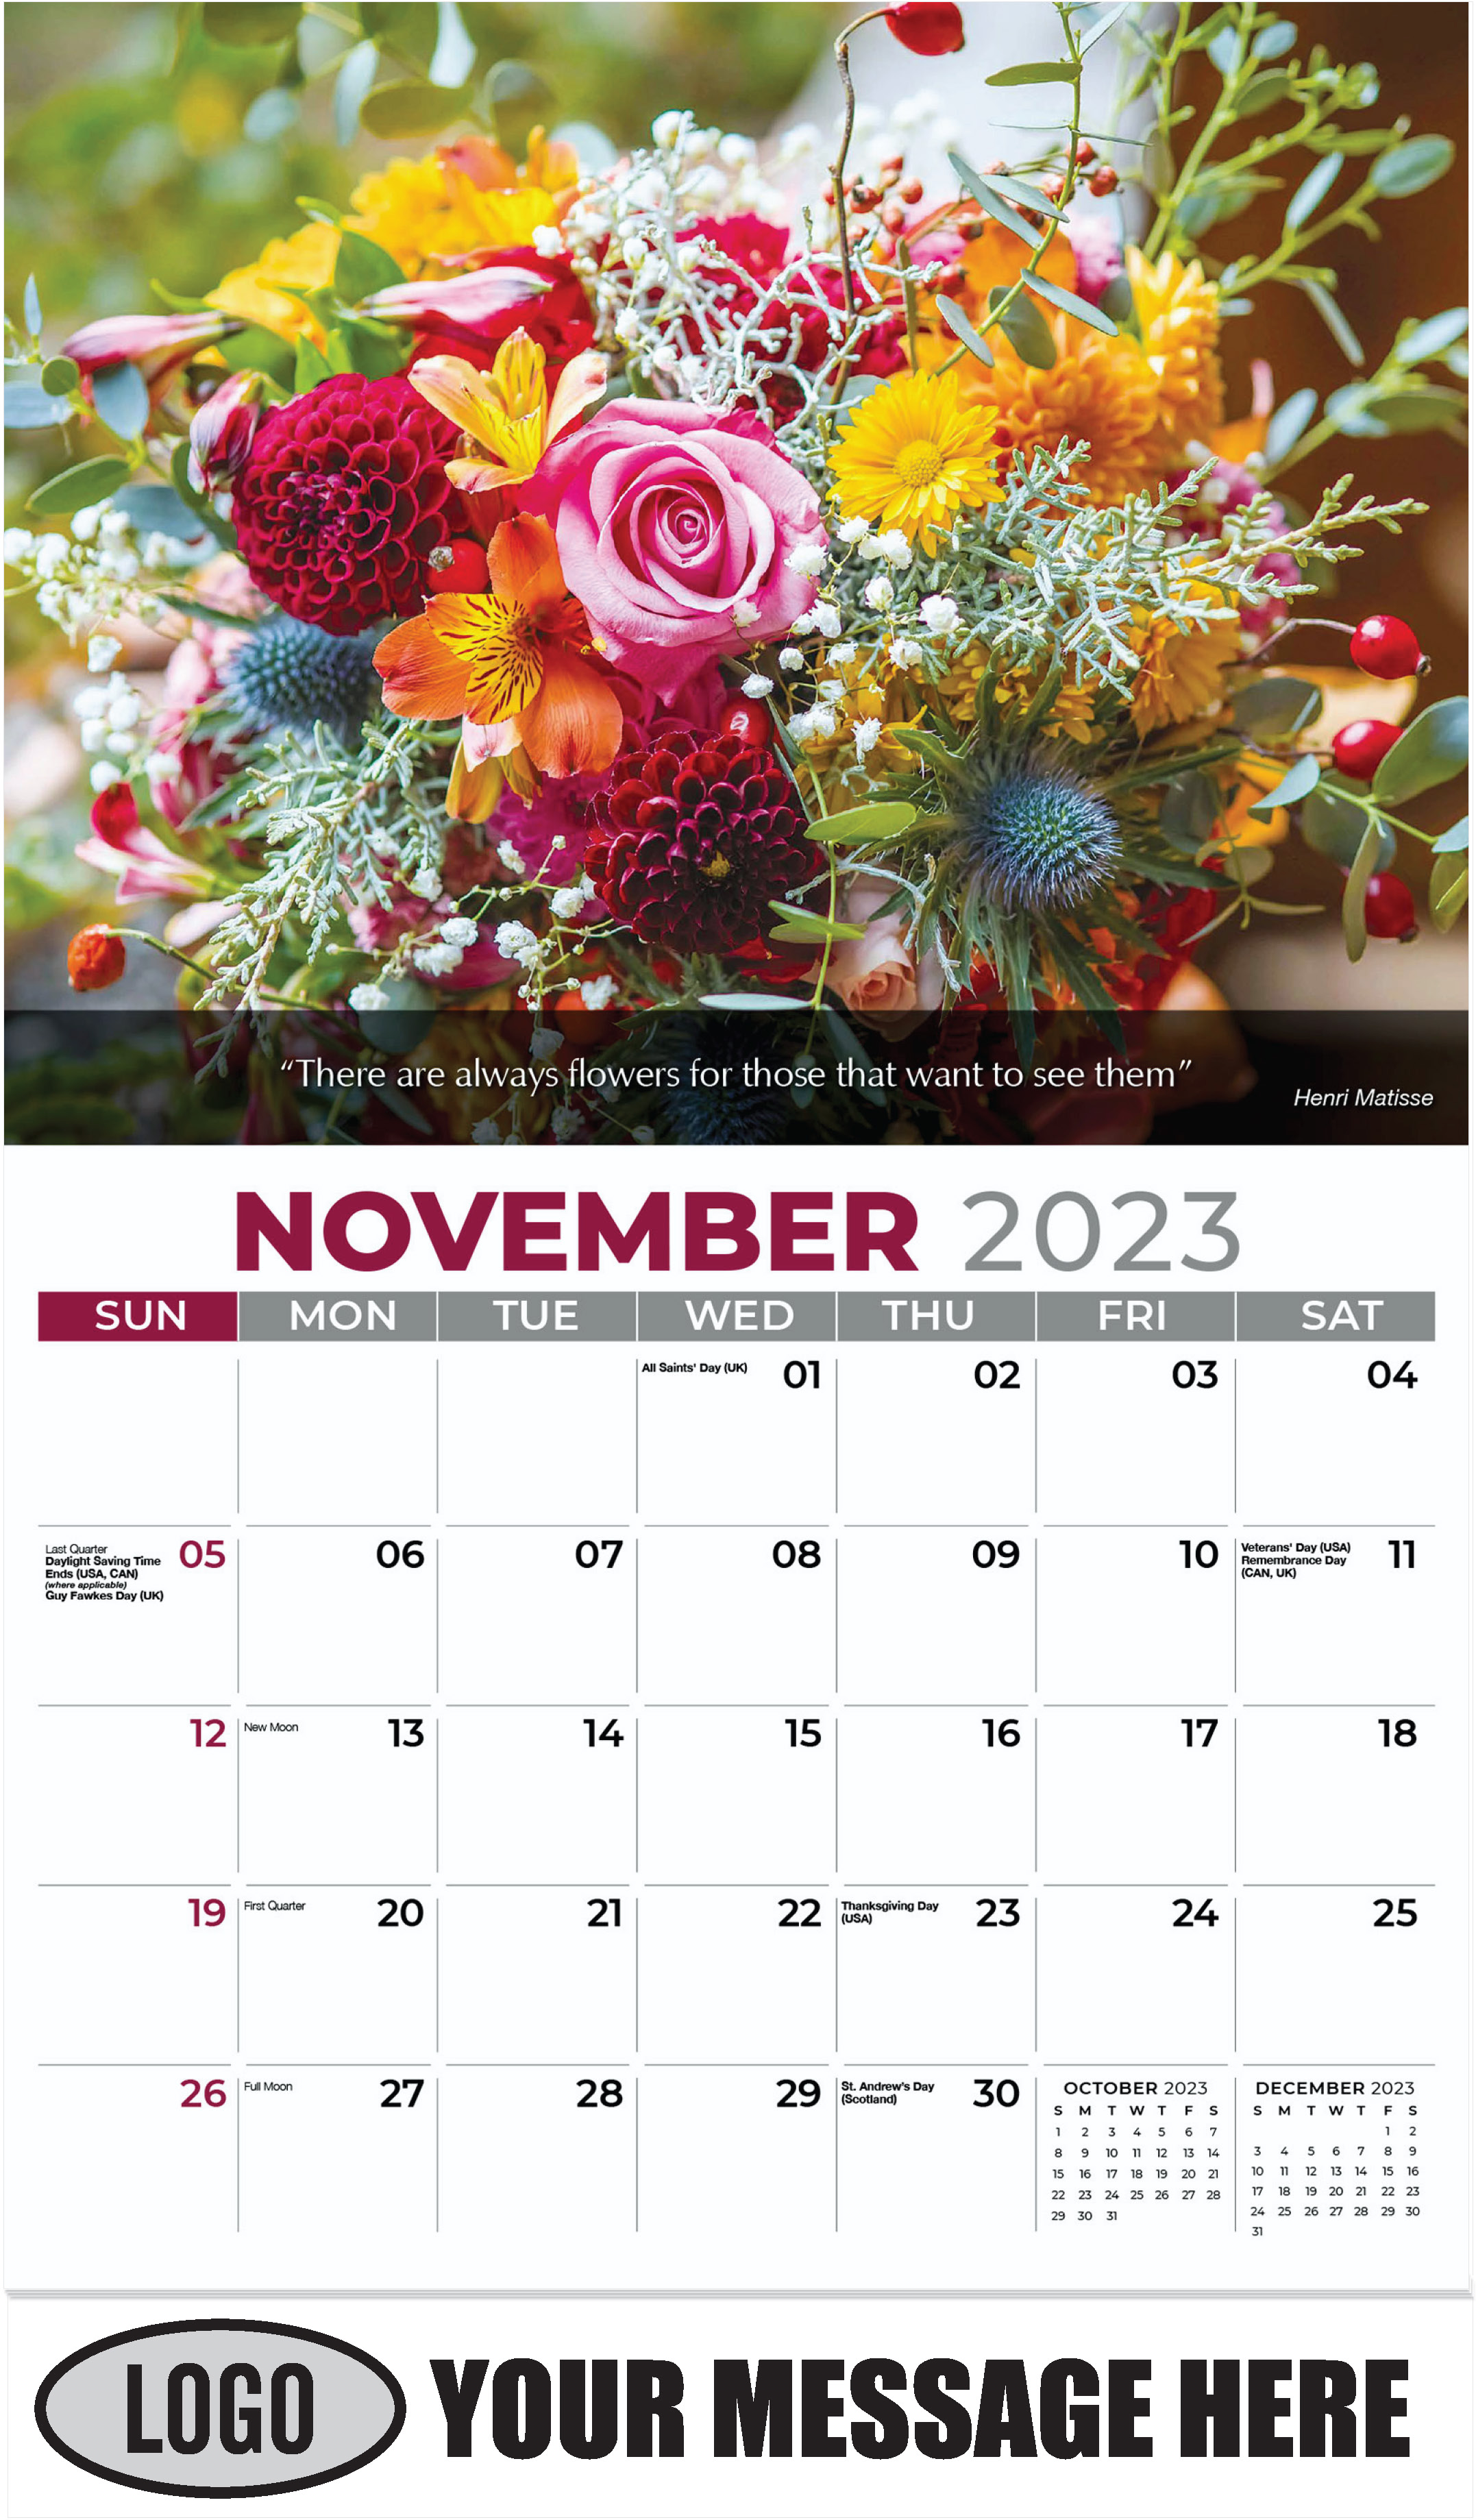 Flower Bouquet - November - Flowers & Gardens 2023 Promotional Calendar